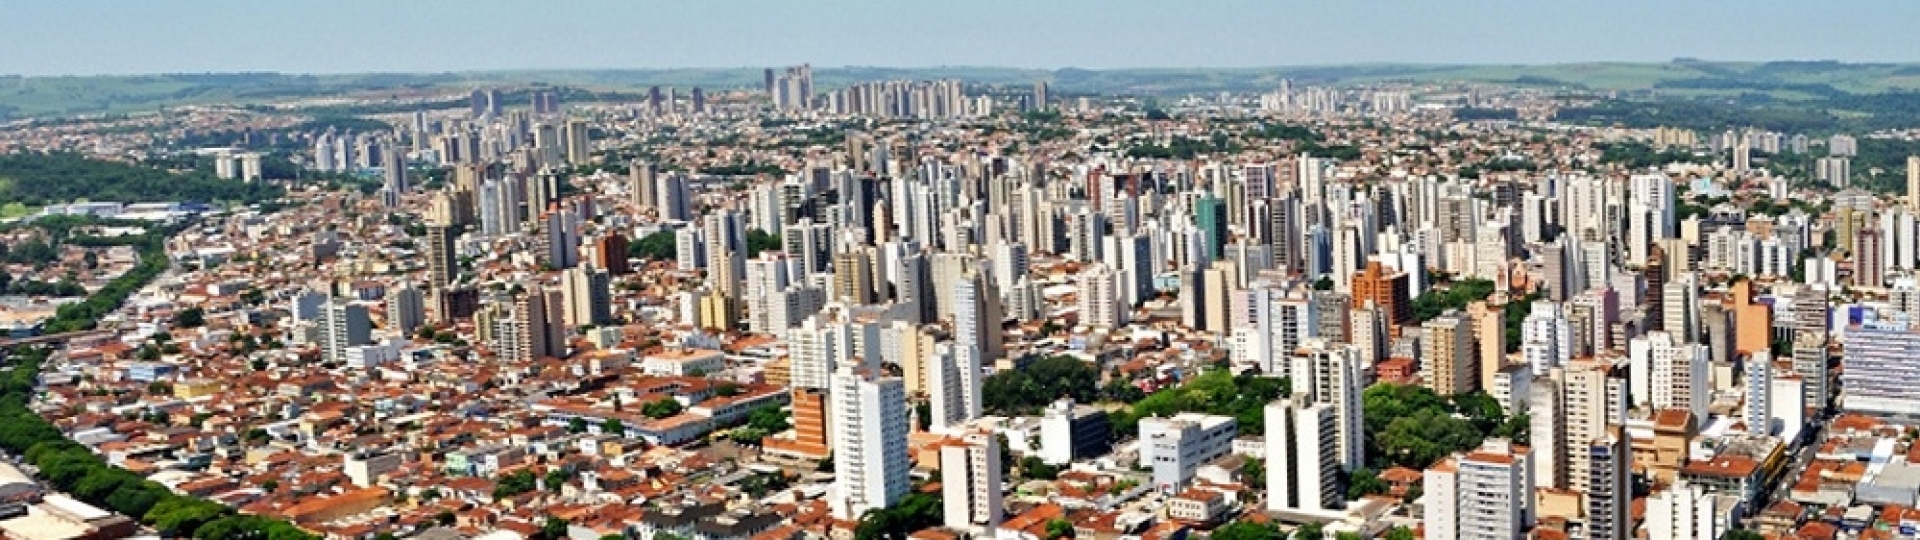 Ribeirão Preto - ABAG-RP